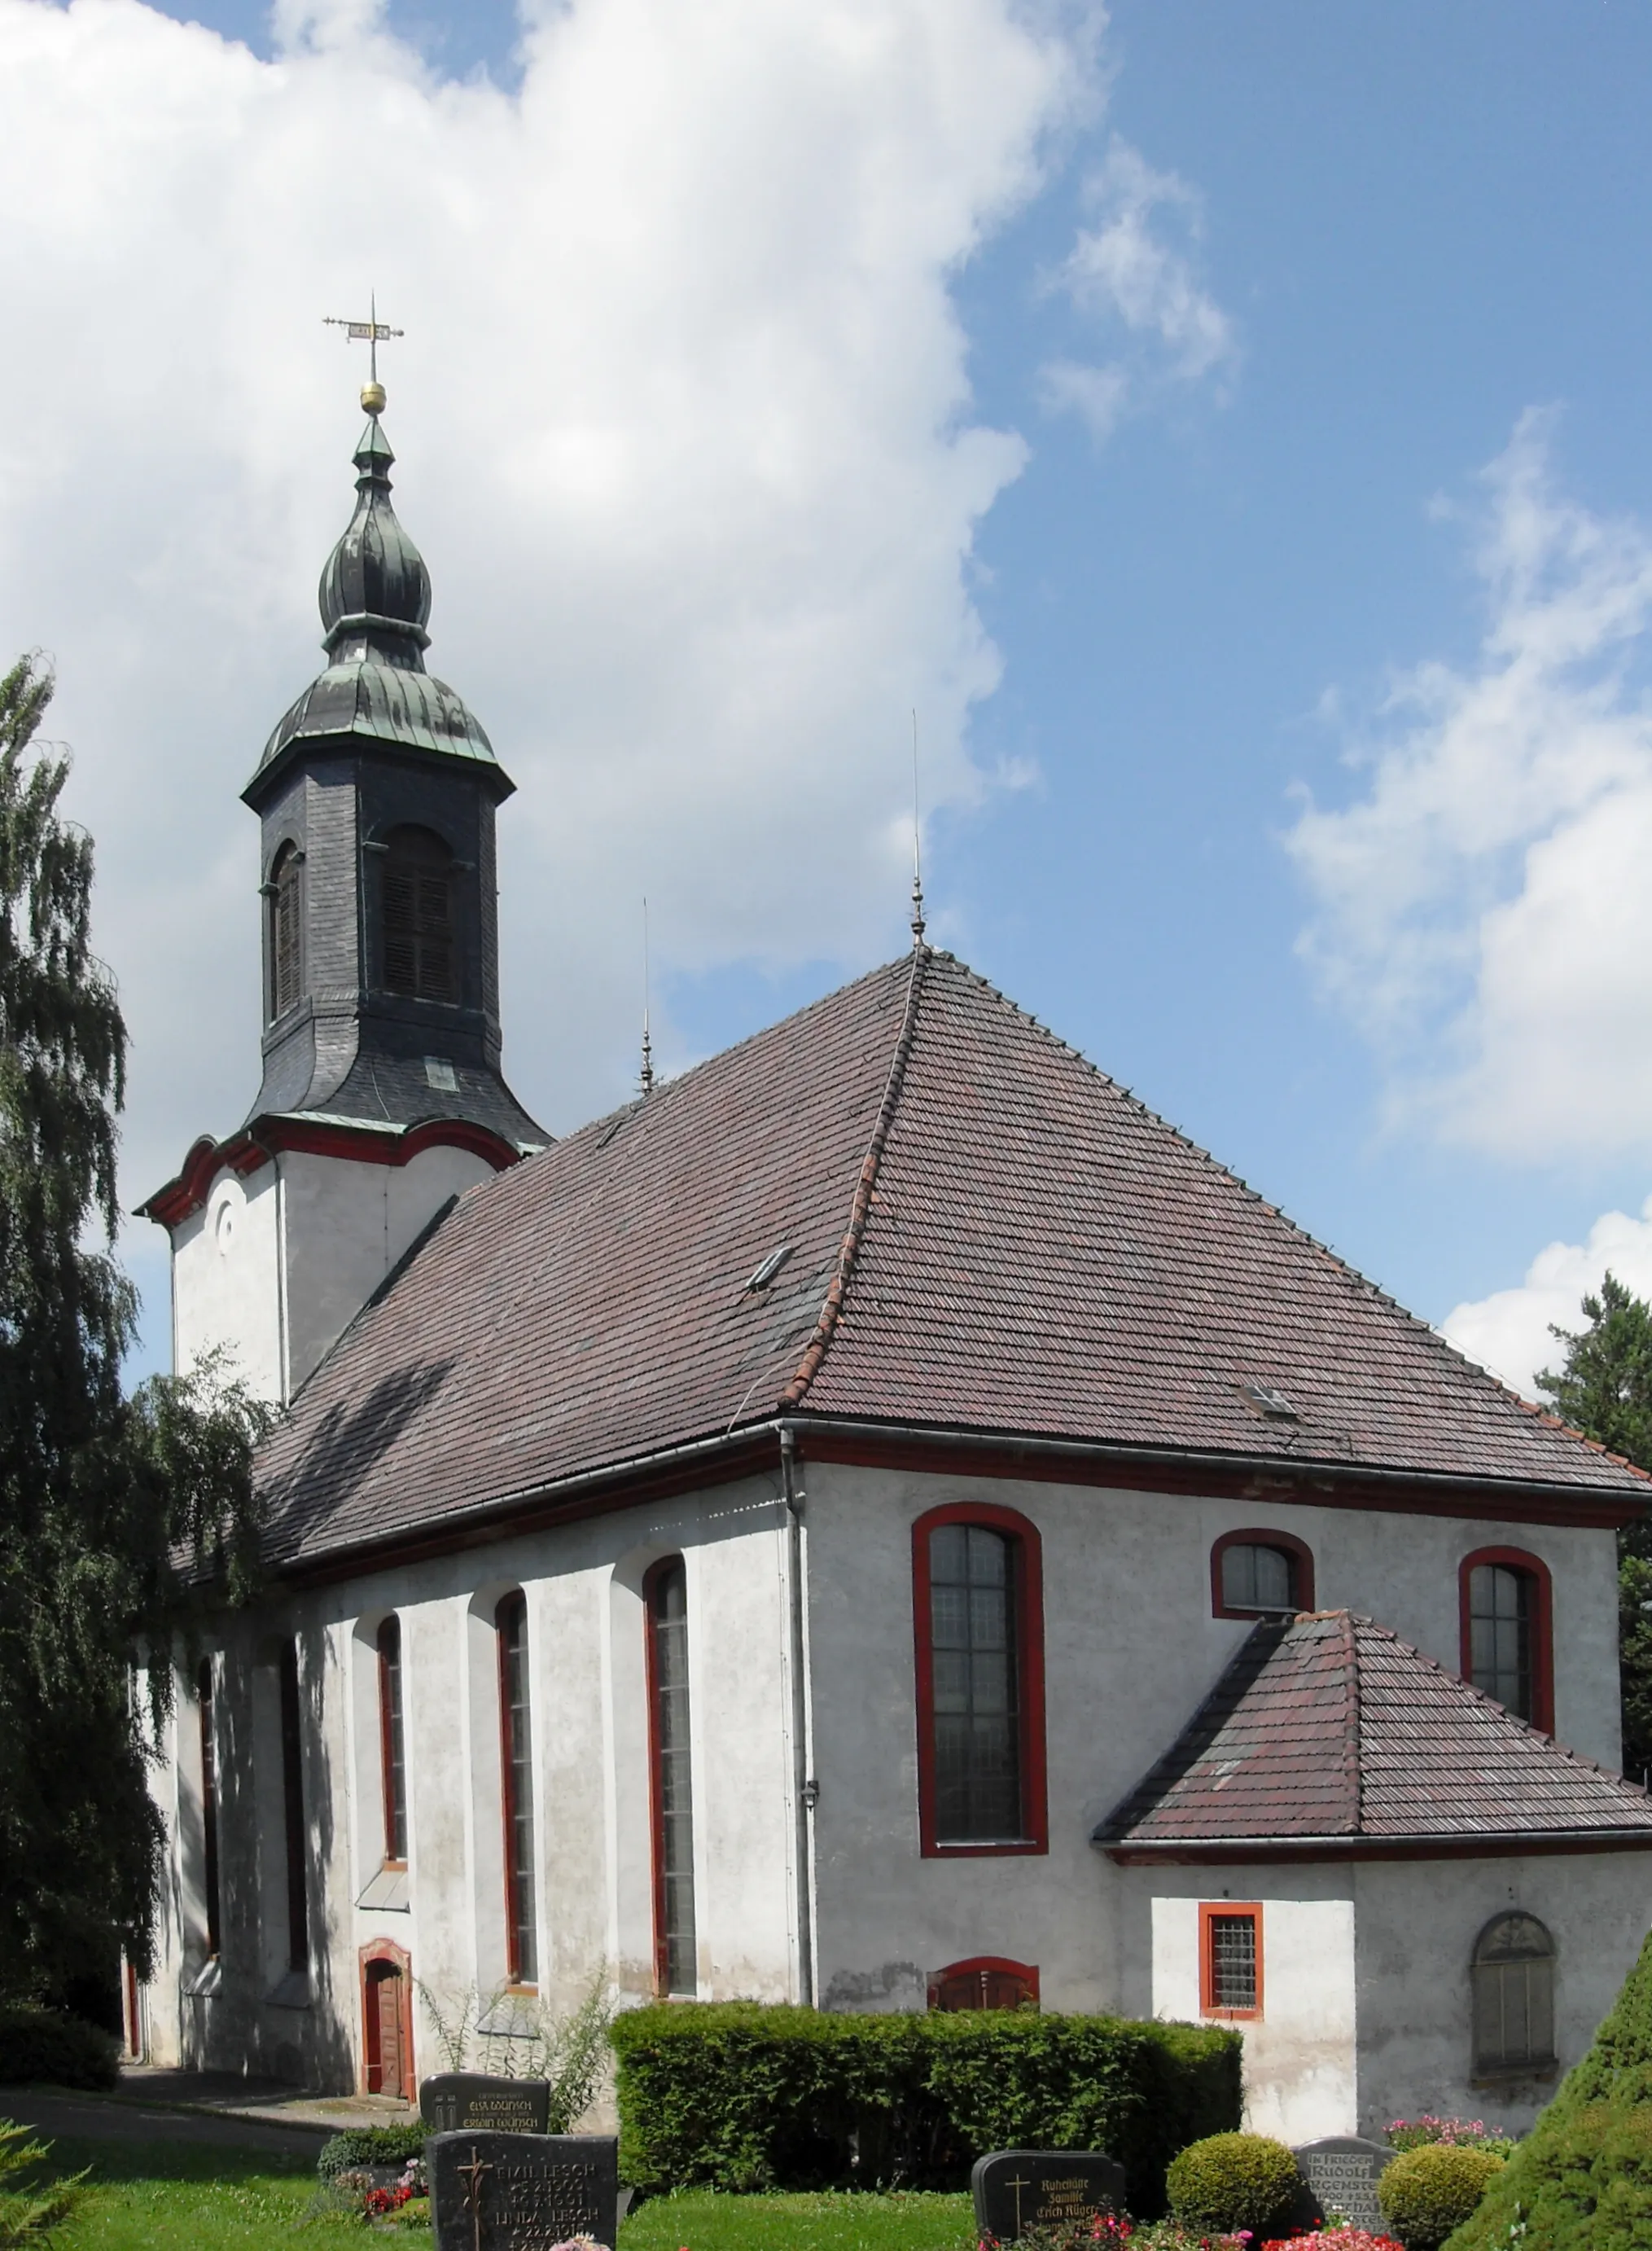 Photo showing: Südostseite der evangelischen Kirche in Leubsdorf, Landkreis Mittelsachsen